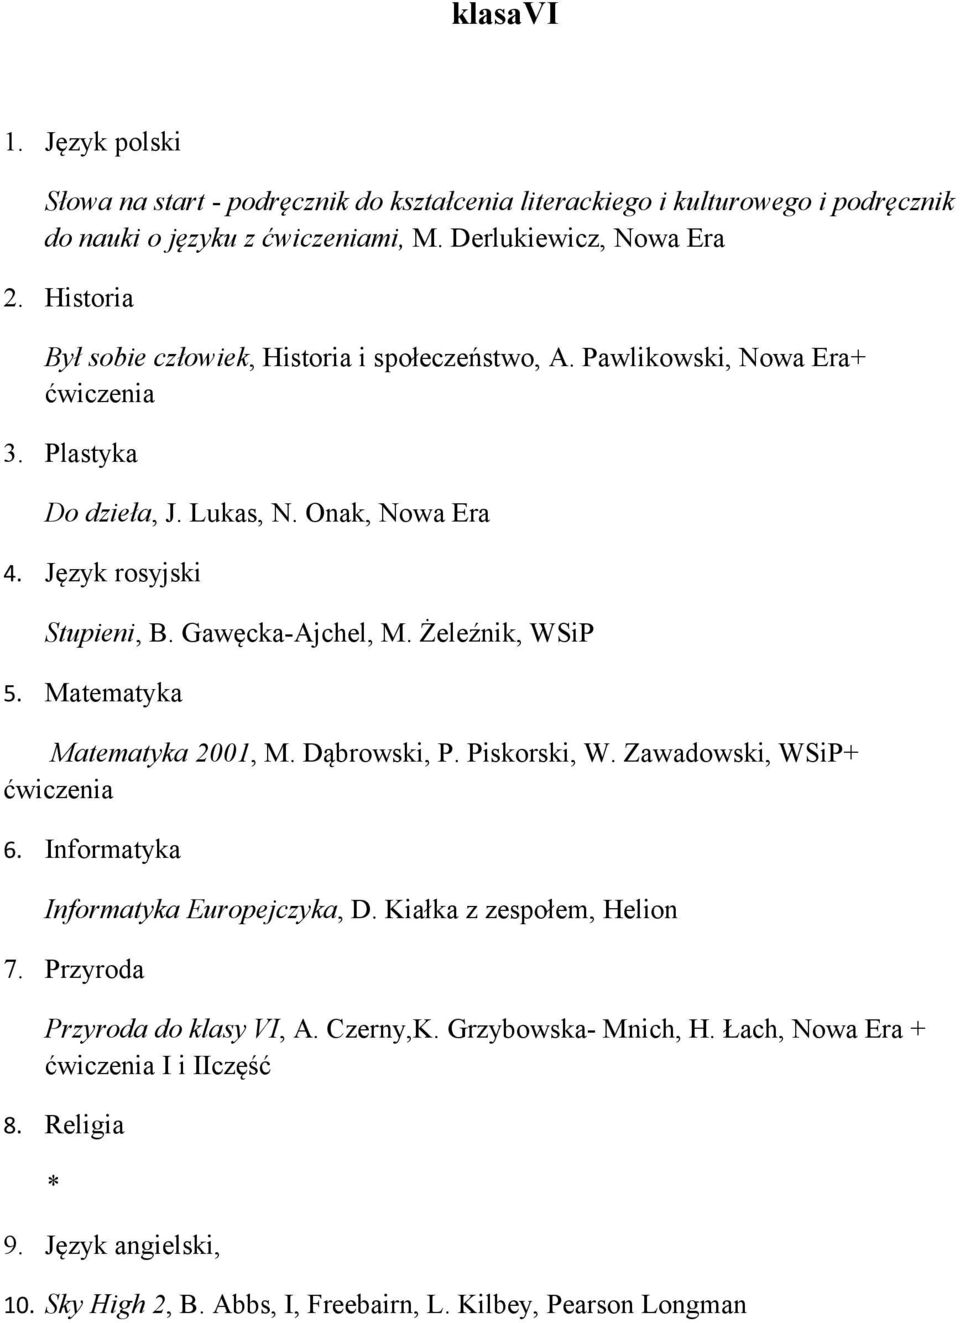 Gawęcka-Ajchel, M. Żeleźnik, WSiP 5. Matematyka Matematyka 2001, M. Dąbrowski, P. Piskorski, W. Zawadowski, WSiP+ 6. Informatyka Informatyka Europejczyka, D.